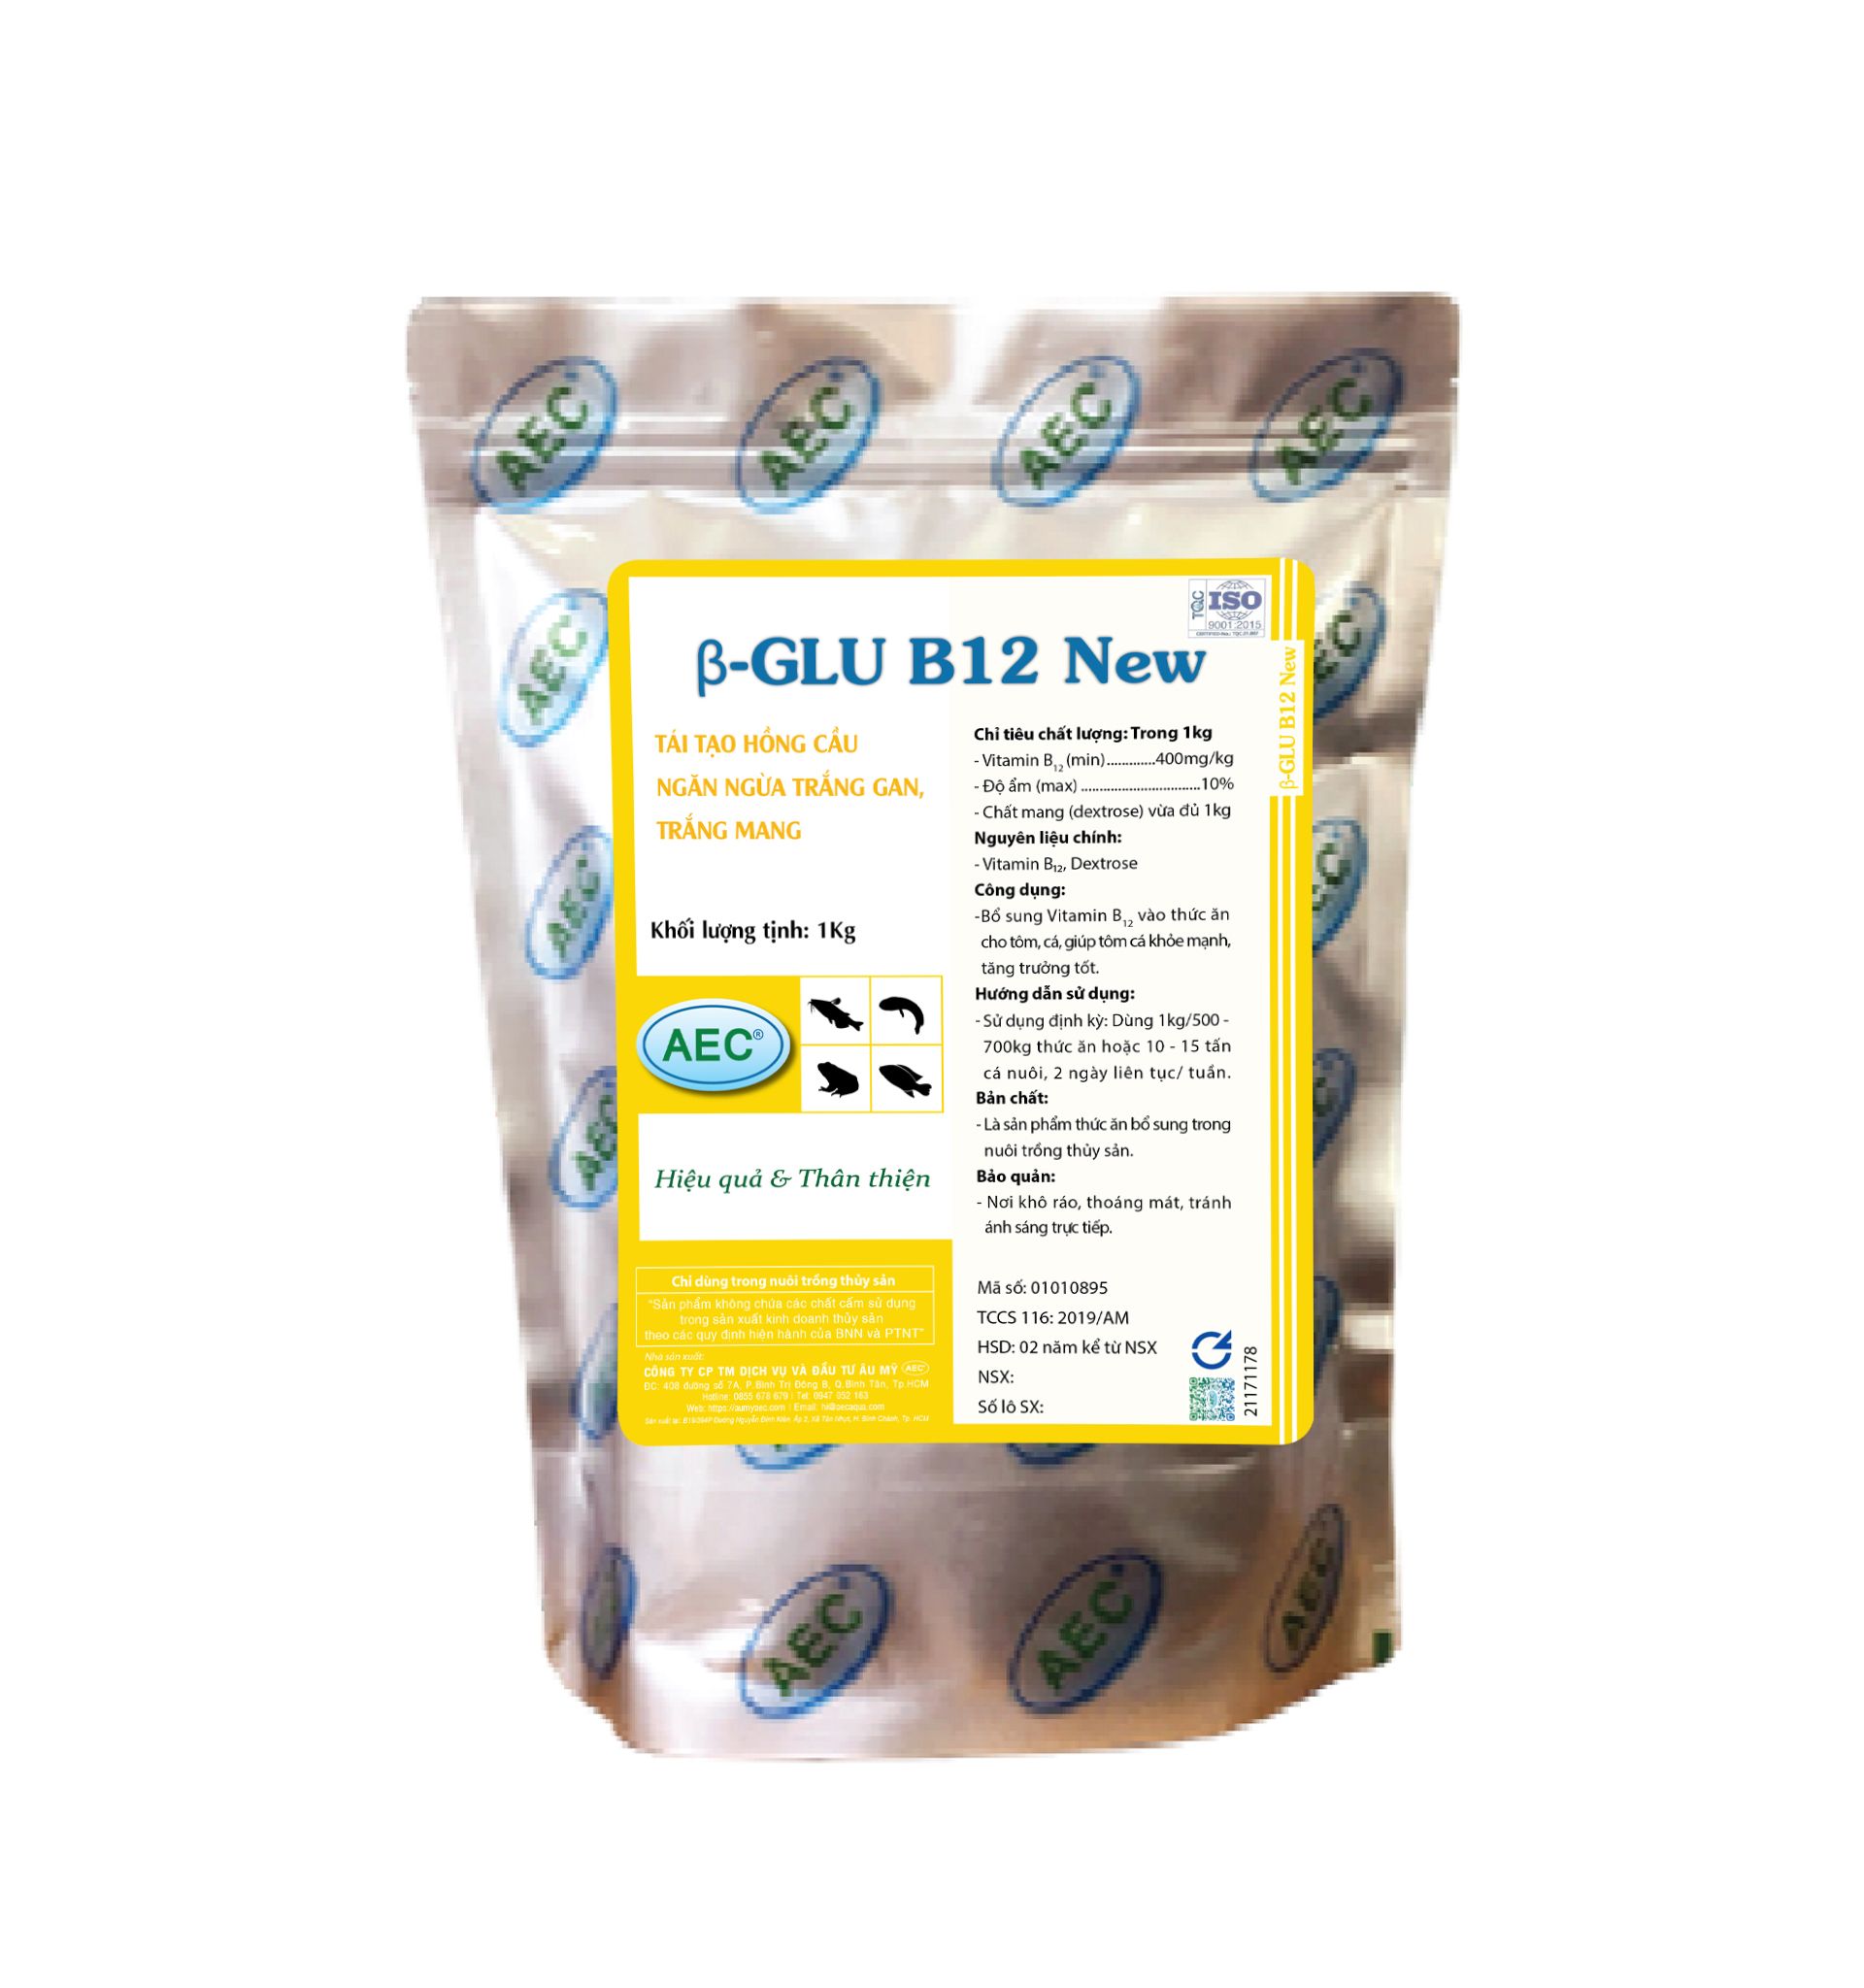  β-GLU B12 NEW - Tái tạo hồng cầu, ngăn ngừa trắng gan - trắng mang 